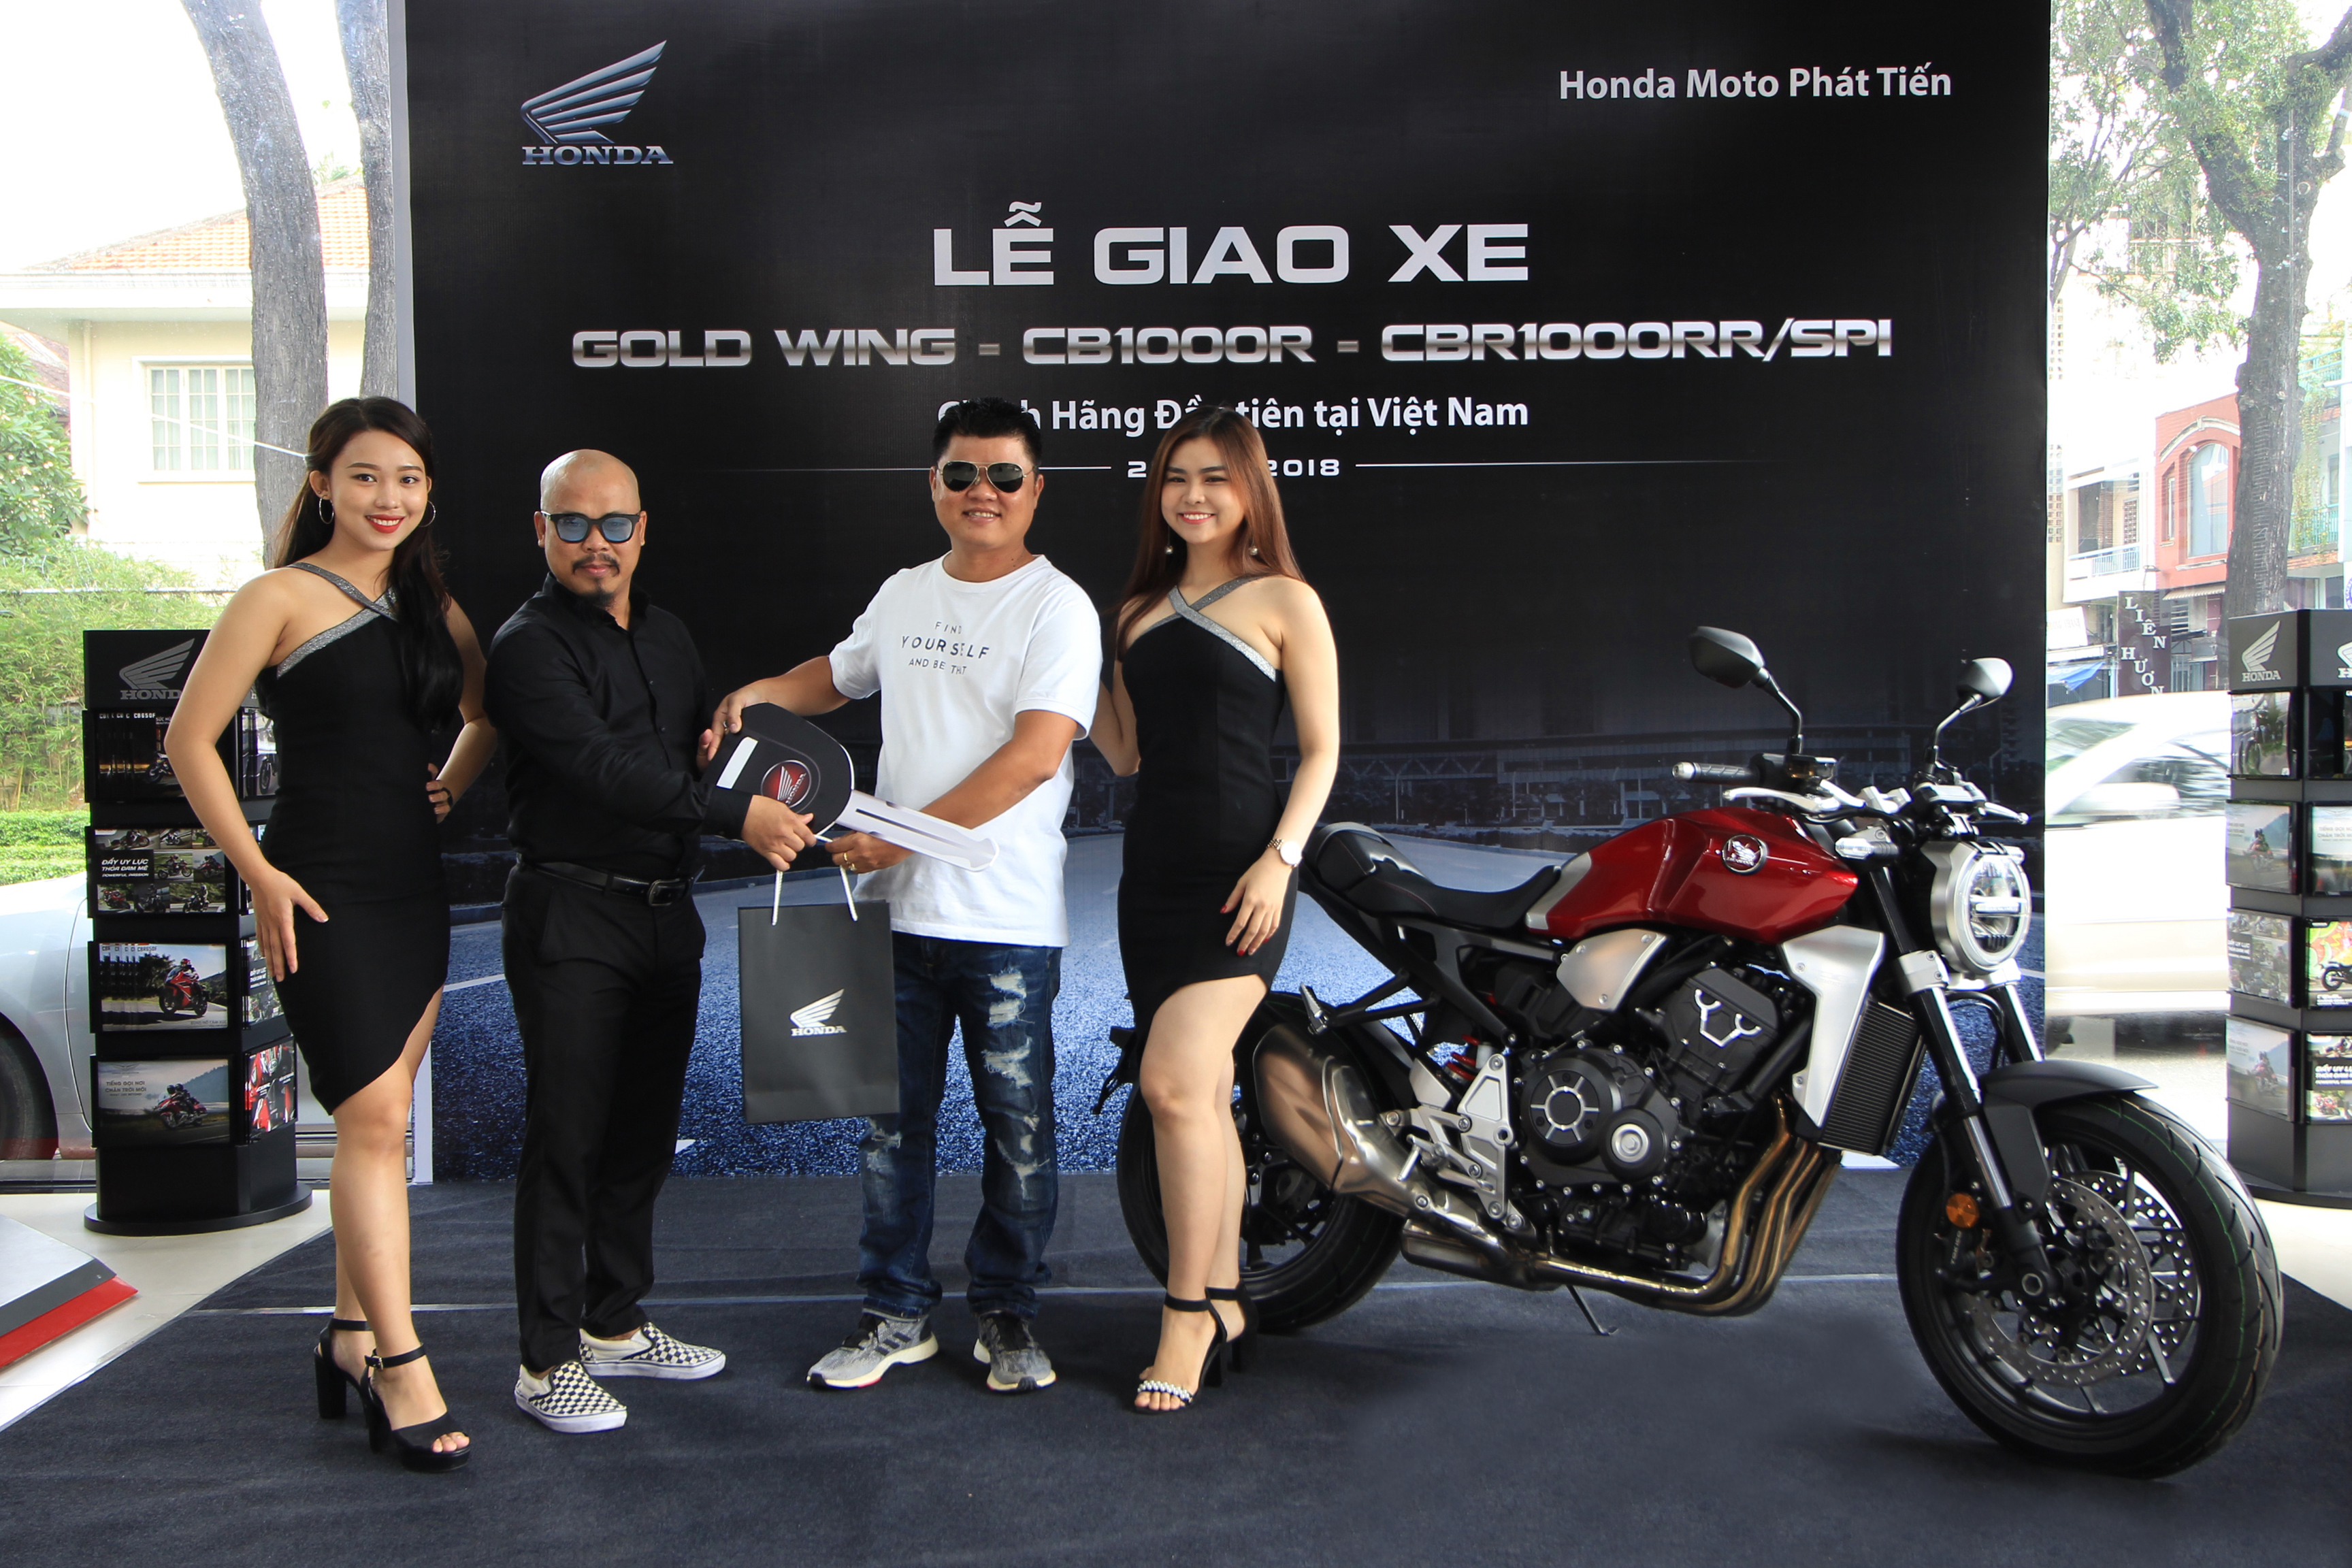 4 Khach Hang Việt đầu Tien Nhận Xe Honda Cb1000r Va Gold Wing Chinh Hang